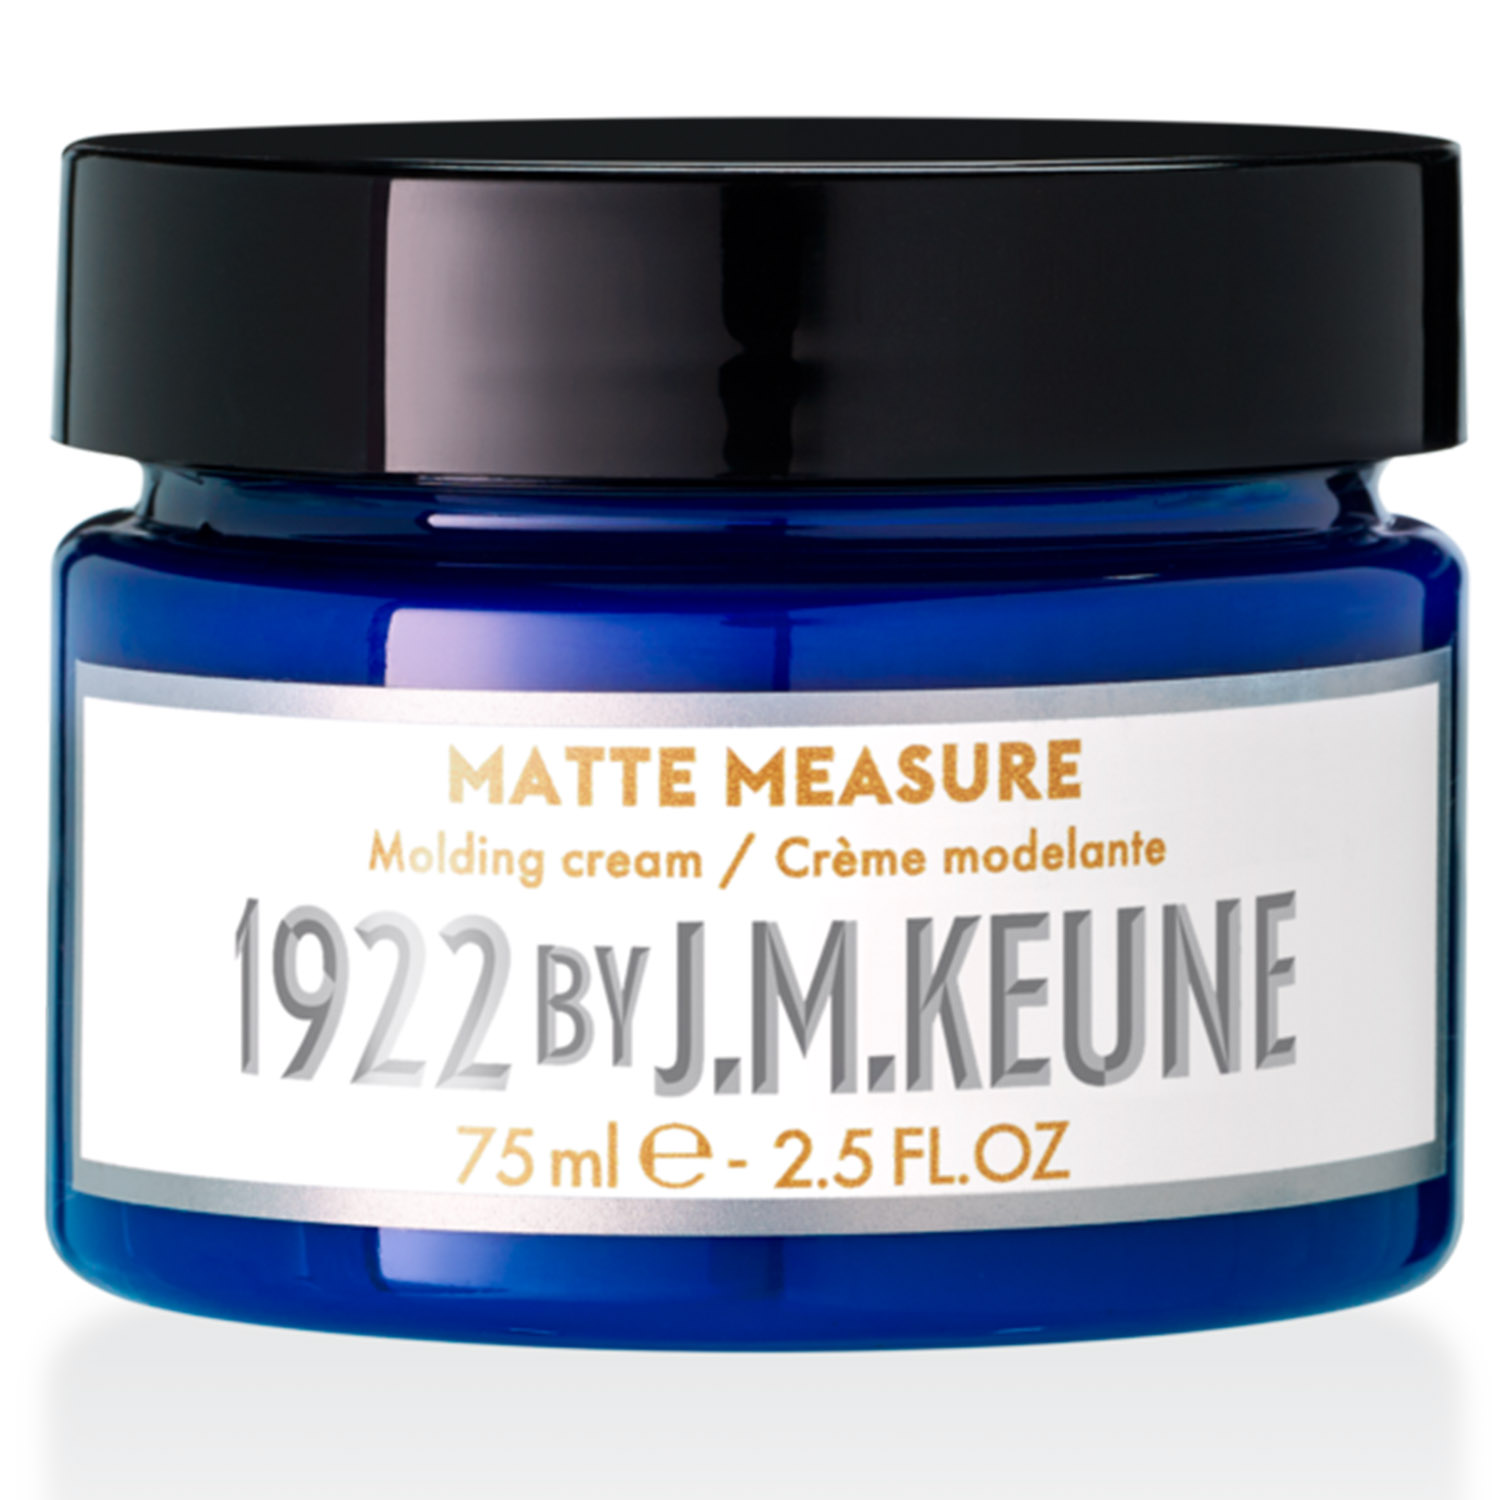 Keune Матирующий крем для укладки волос Matter Measure, 75 мл (Keune, 1922 by J.M. Keune) keune 1922 care for men крем матирующий для волос matte measure 75 мл